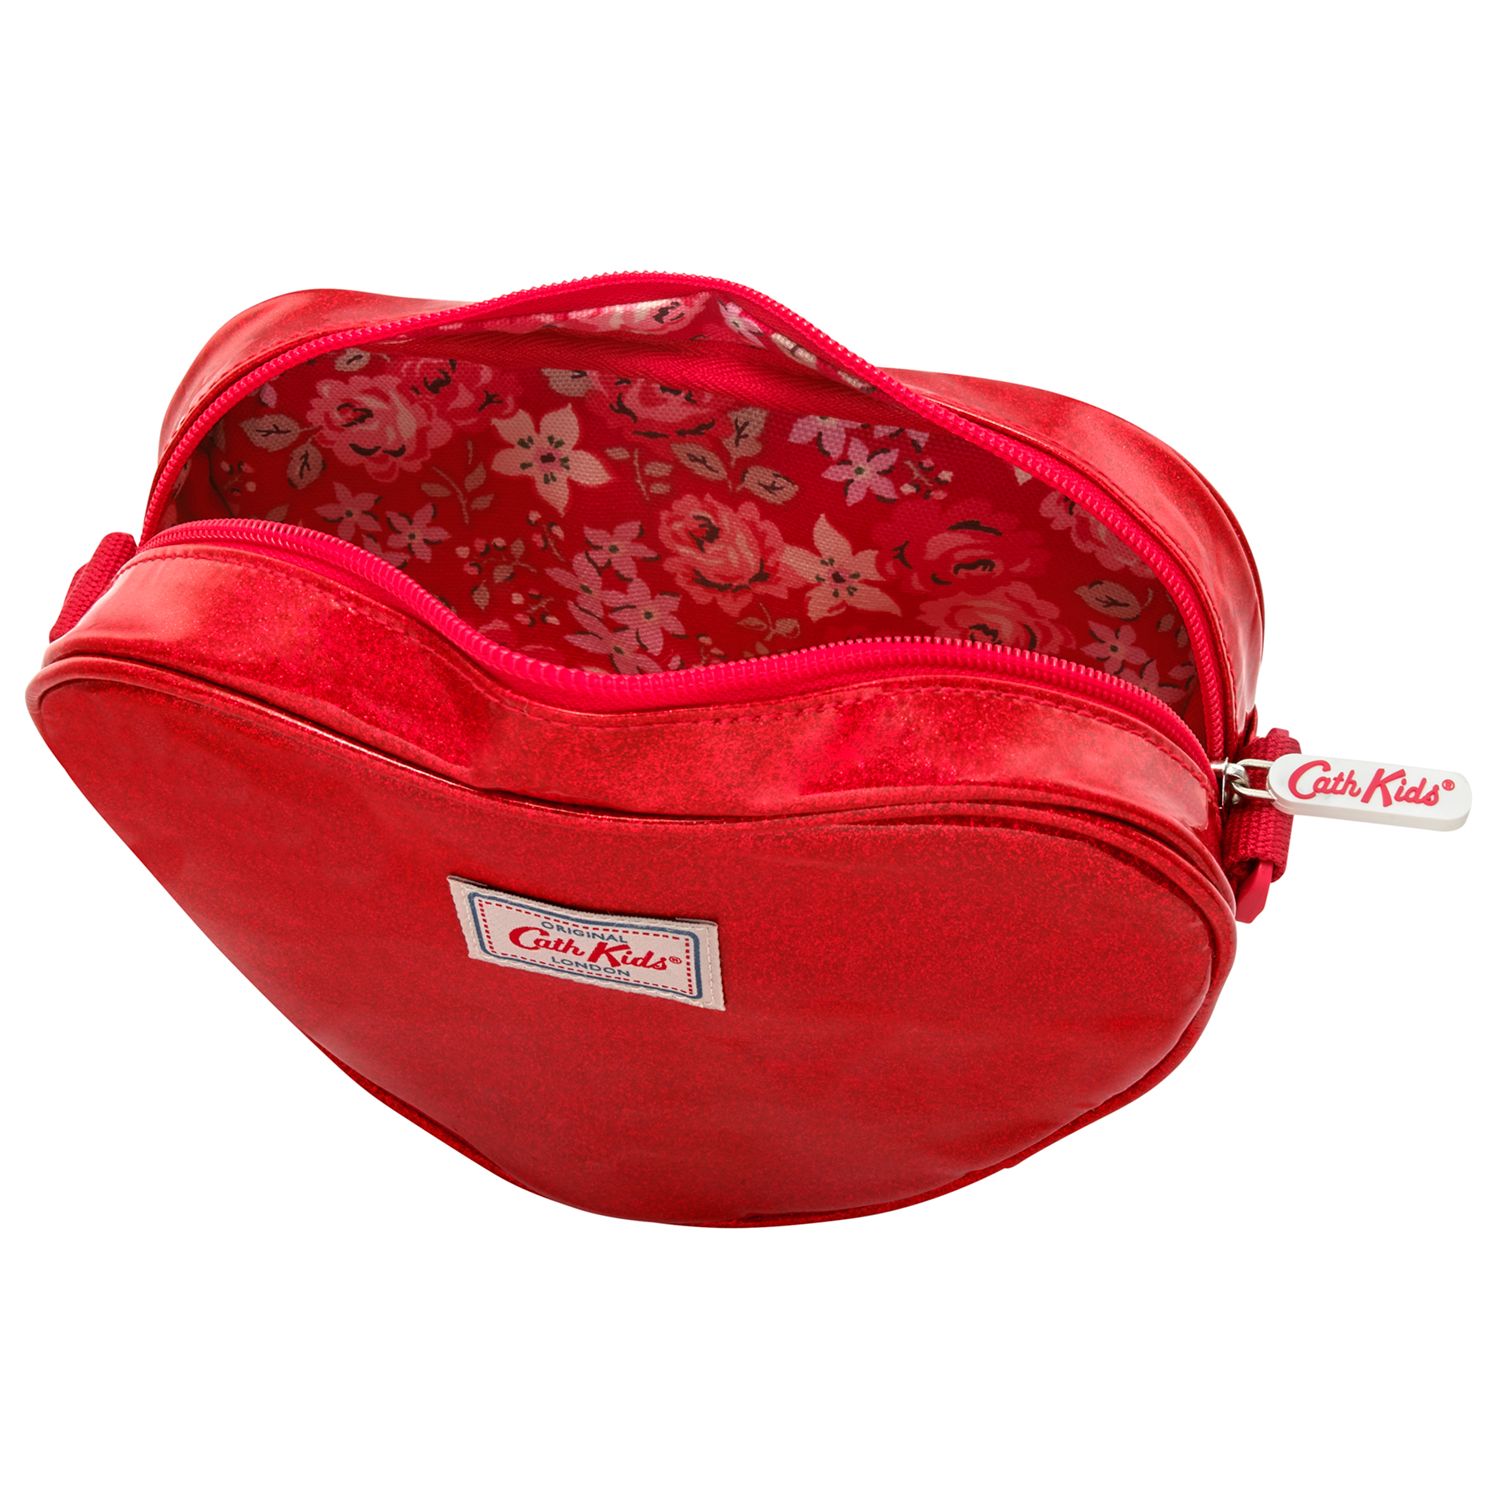 Glitter Heart Handbag, Red 